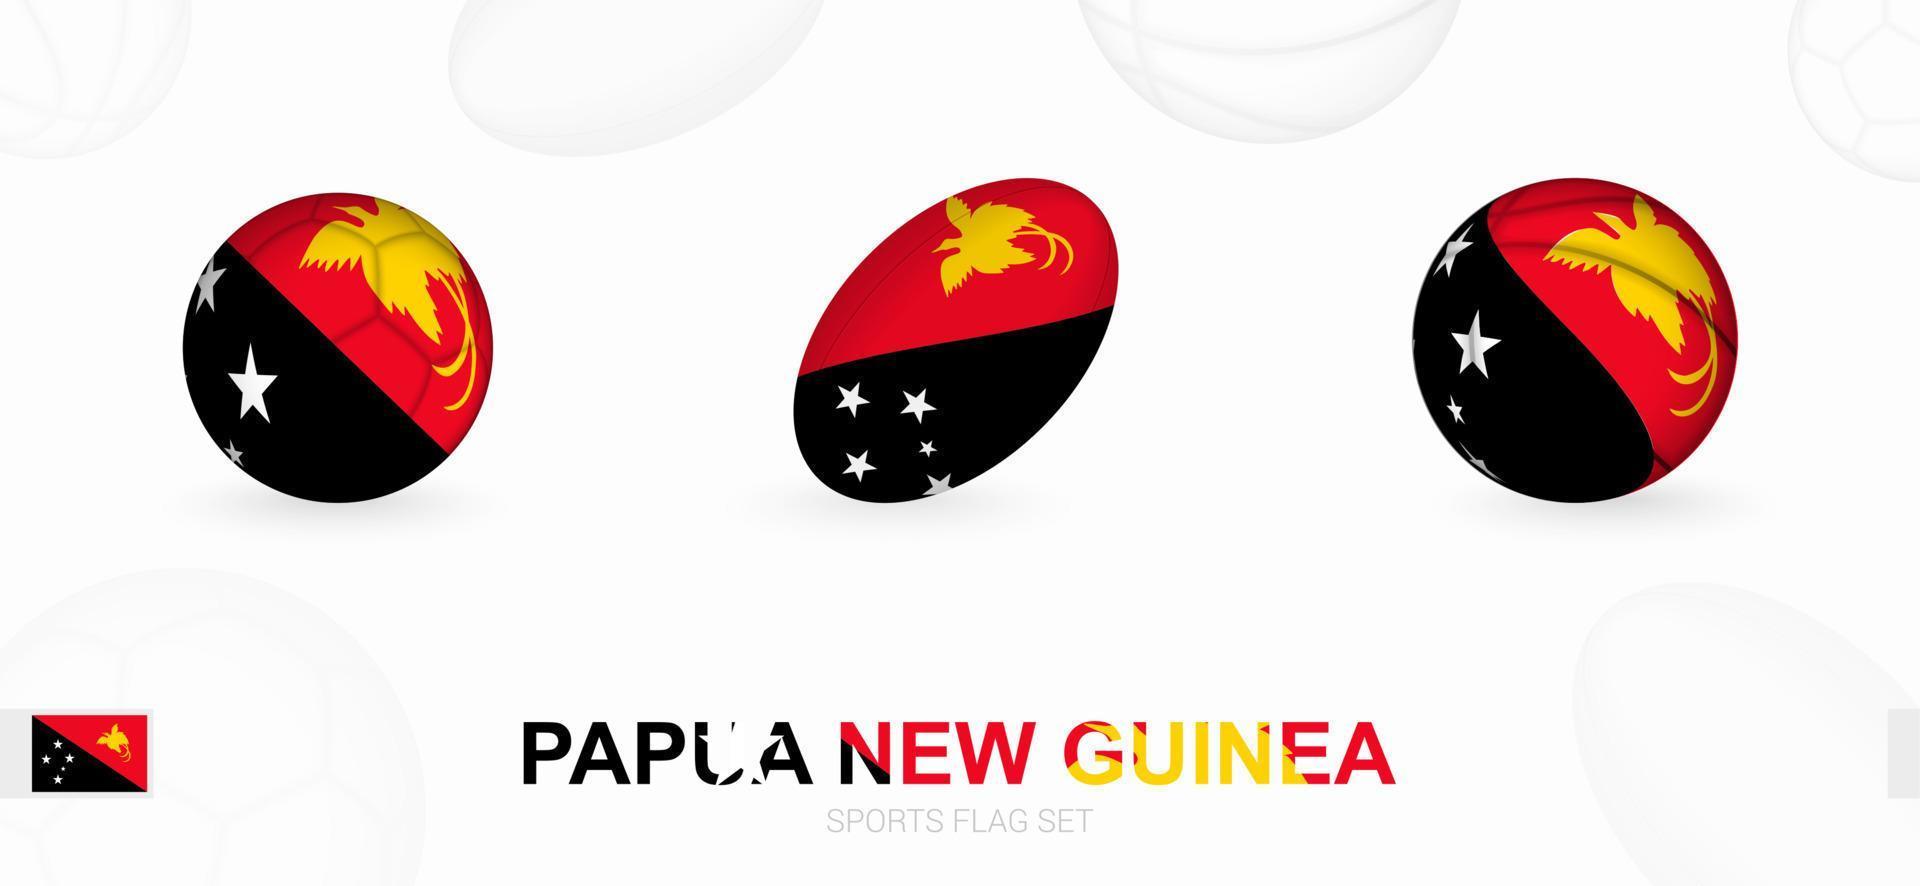 sport- pictogrammen voor Amerikaans voetbal, rugby en basketbal met de vlag van Papoea nieuw Guinea. vector